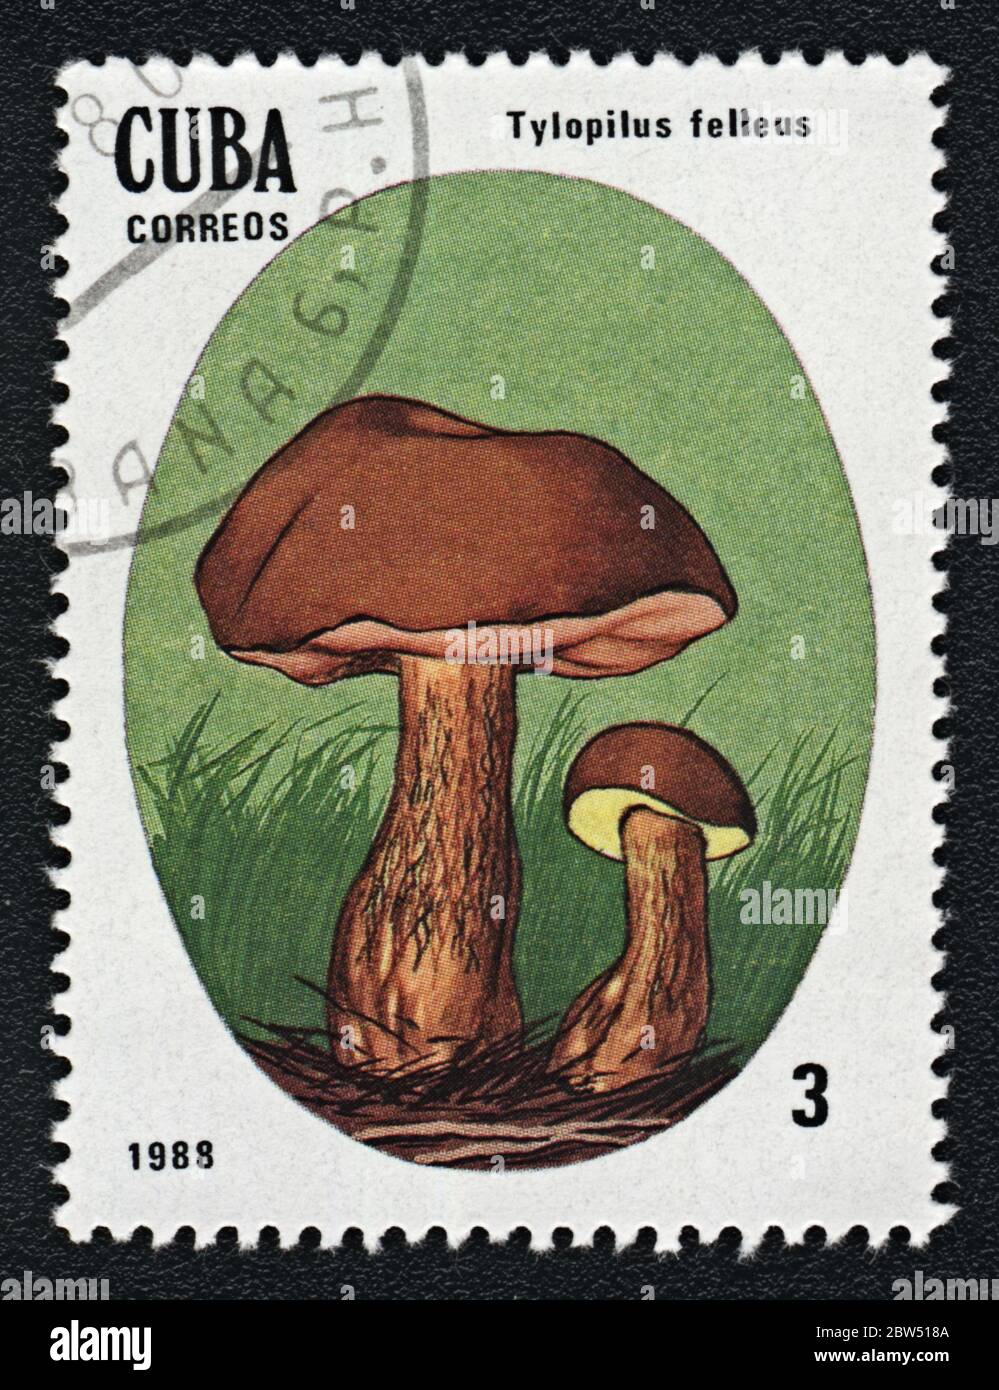 Tylopilus felleus fungo non commestibile. Serie: Funghi non commestibili e velenosi. Francobollo Cuba 1988 Foto Stock